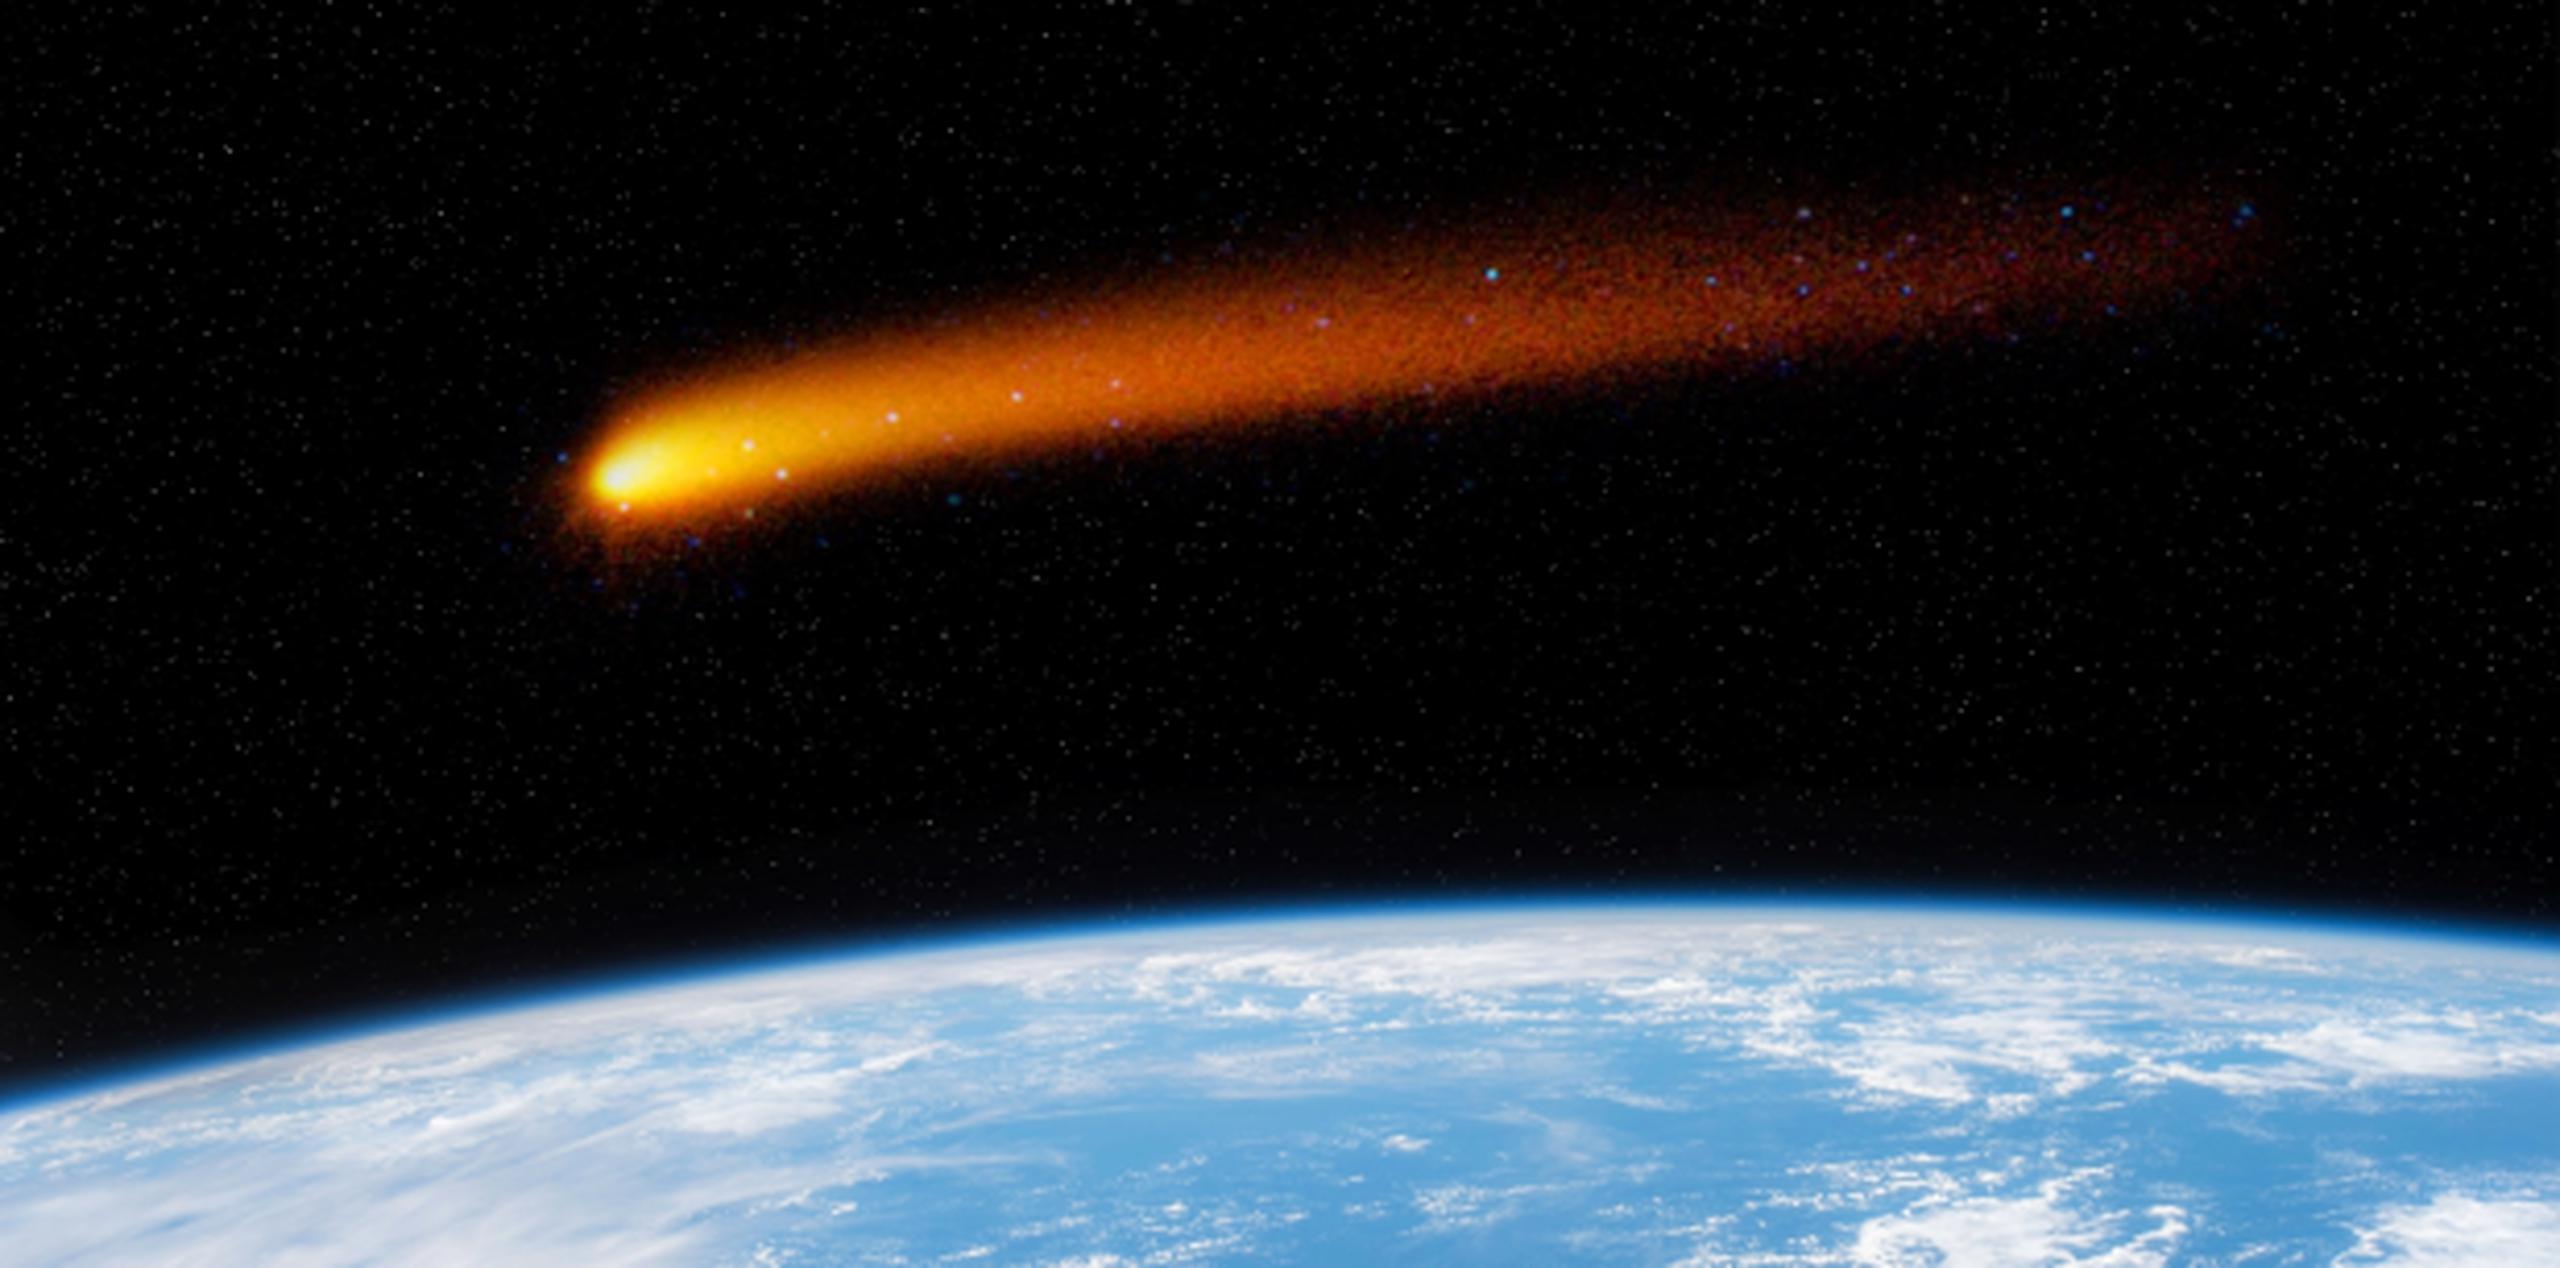 Los científicos tienen la certeza de que este asteroide o cometa rosado de 180 metros (600 pies) de largo se originó fuera de nuestro sistema solar. (Shutterstock)